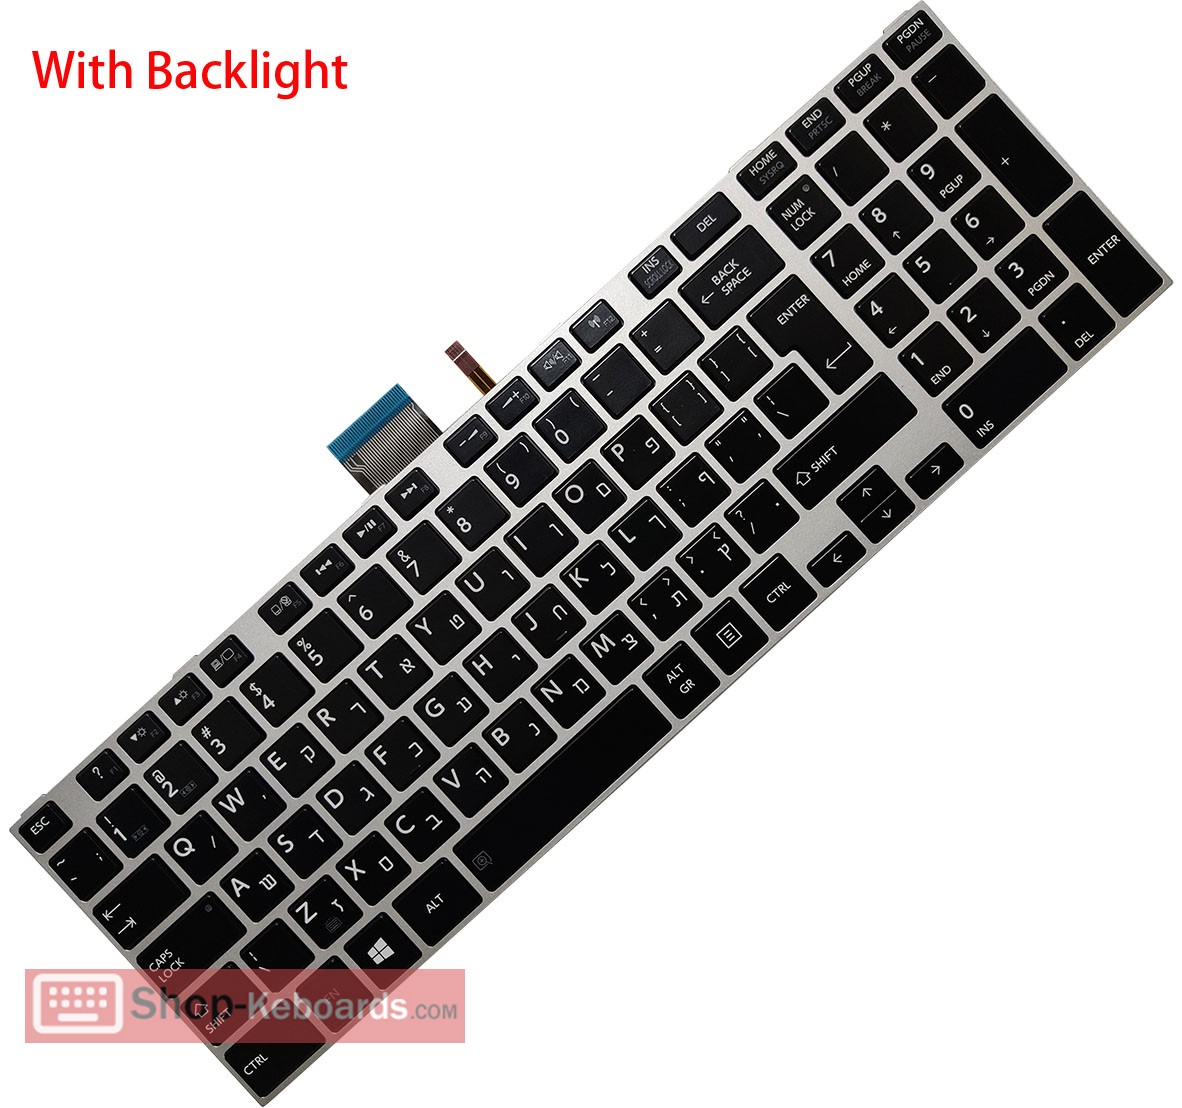 Toshiba MP-12W86U4J528 Keyboard replacement